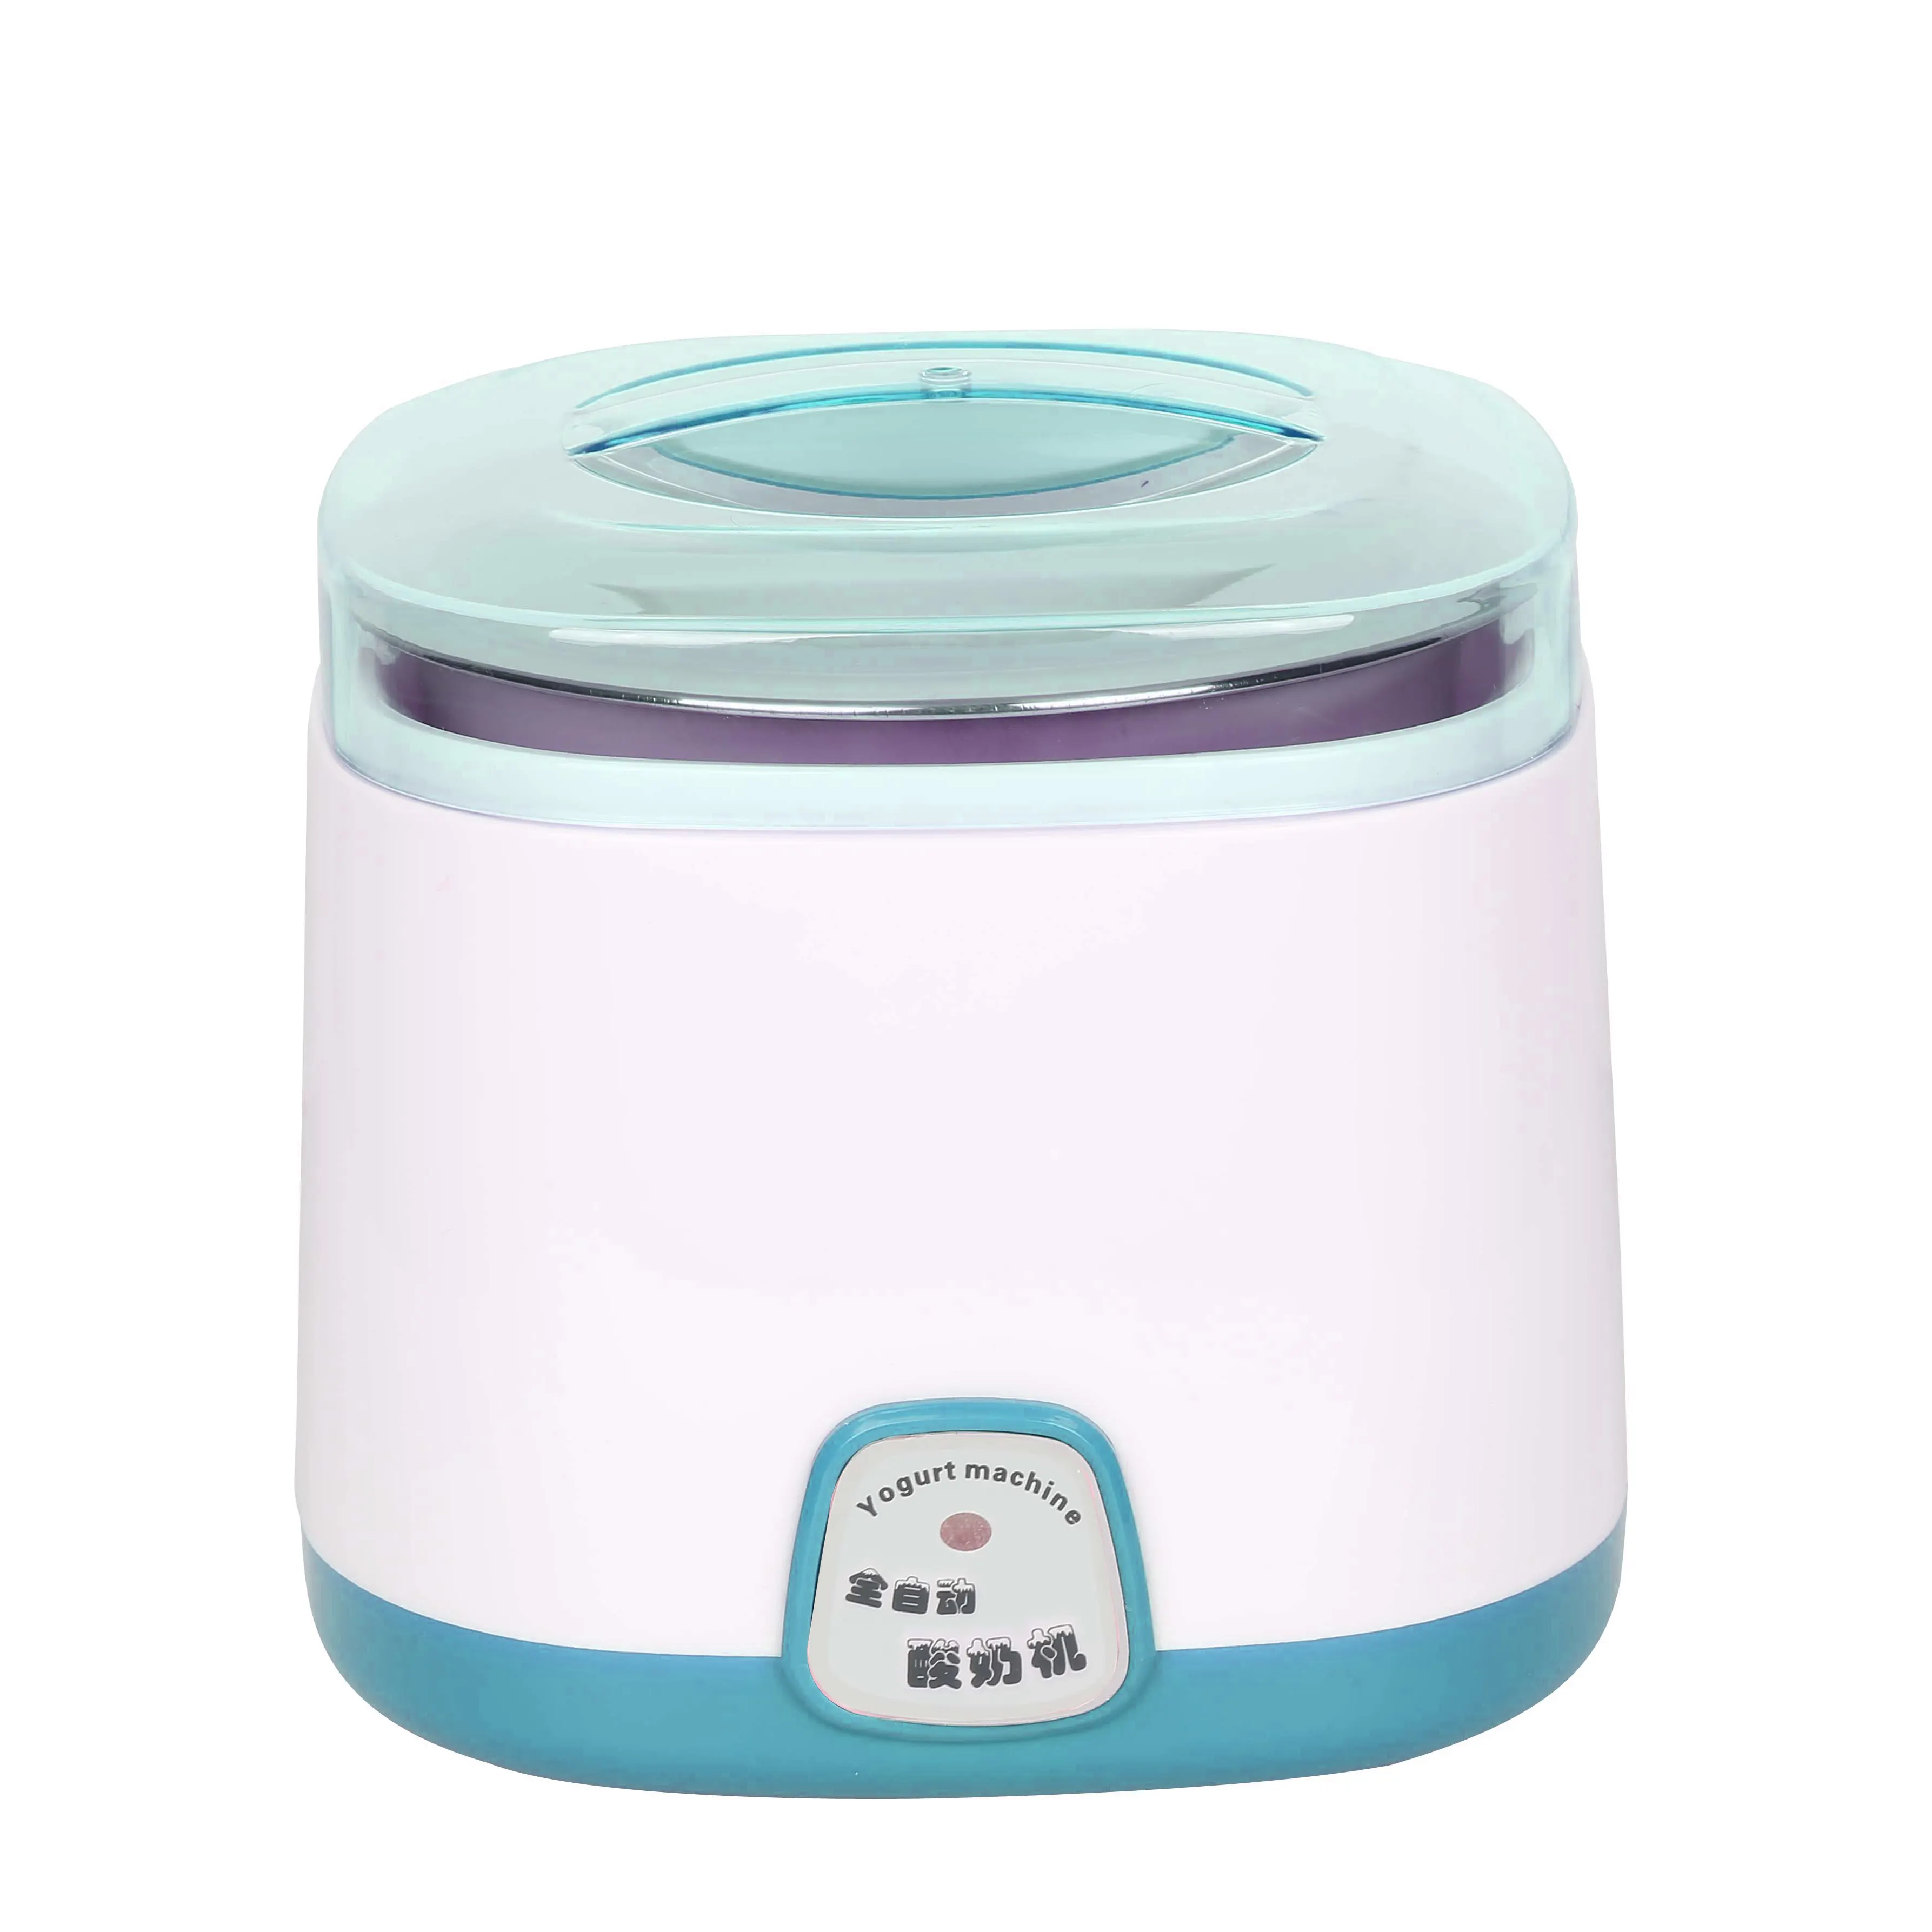 Автоматическая электрическая мини-машина для приготовления йогурта natto из нержавеющей стали для домашнего использования